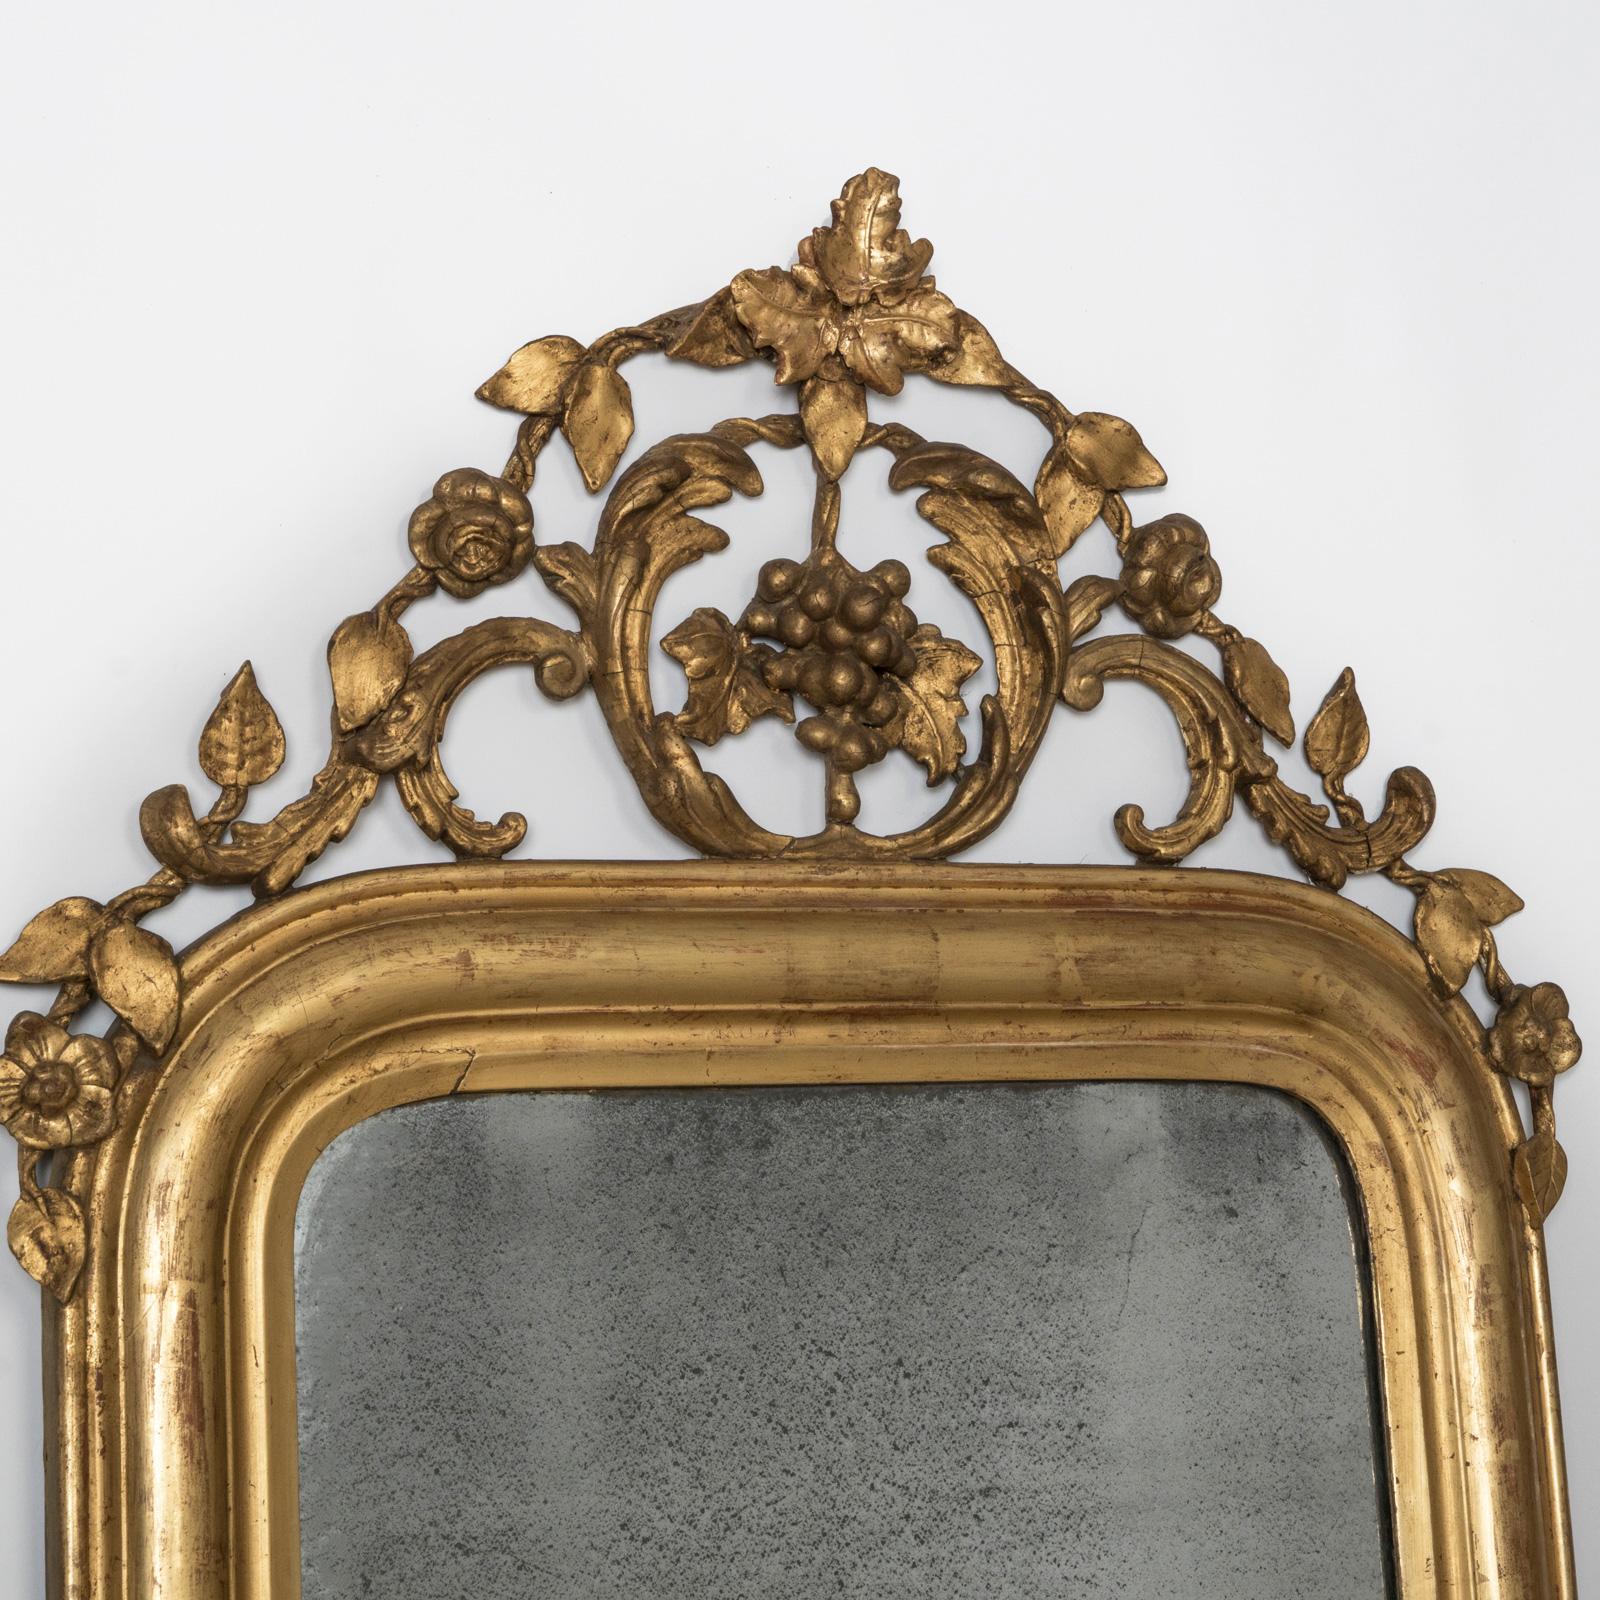 Louis-Philippe Antique French 19th C Louis Philippe Mirror with Foliage and Grape Motifs (Miroir ancien français du 19ème siècle avec des motifs de feuillage et de raisin) en vente